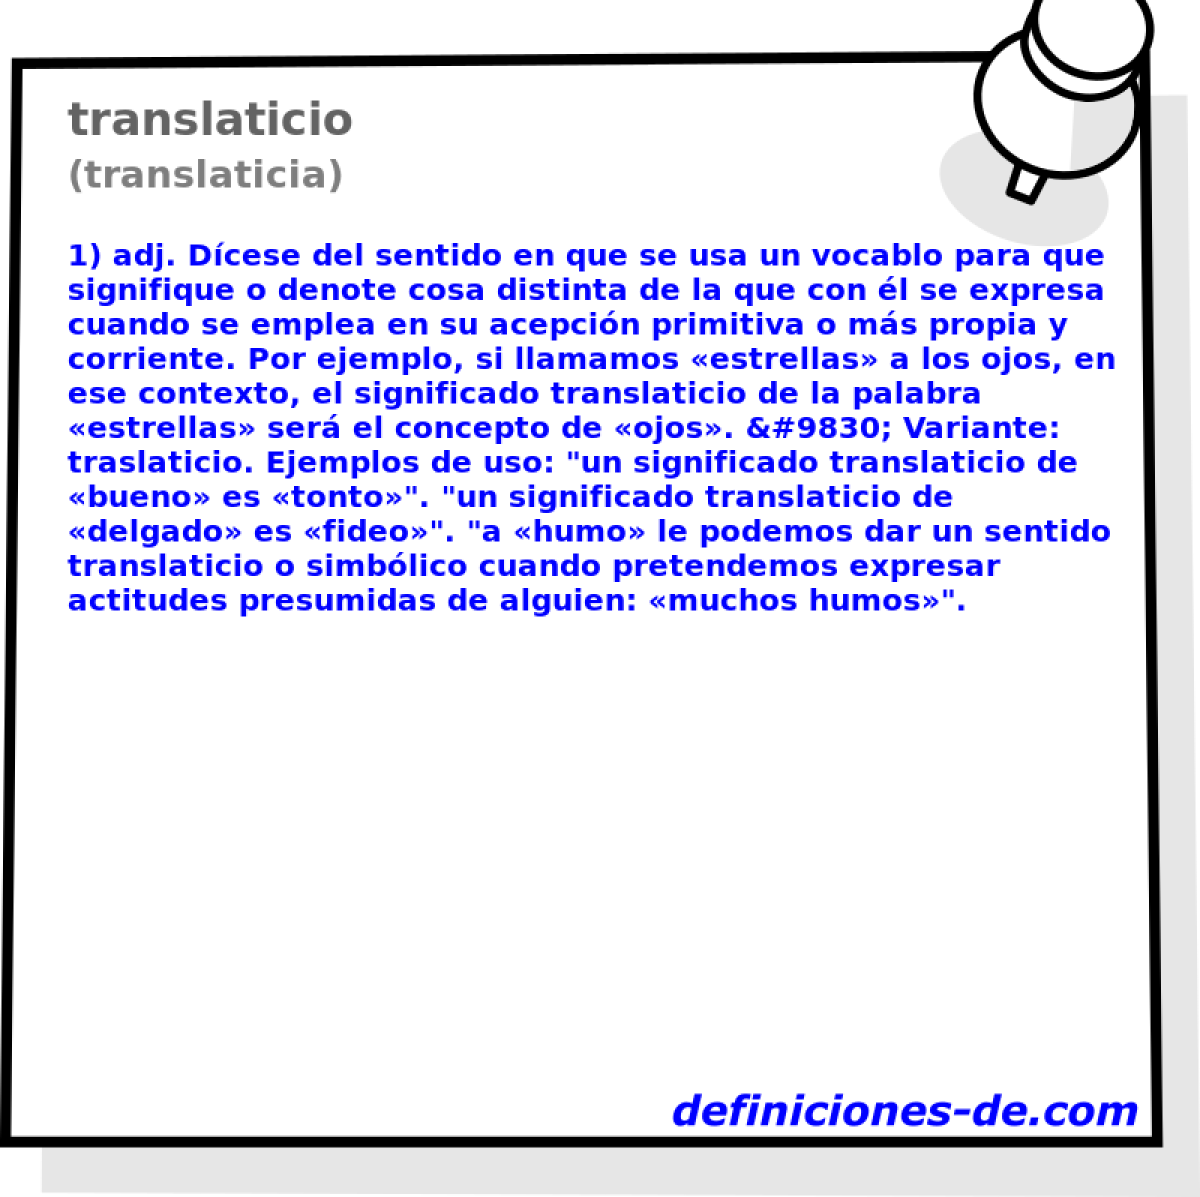 translaticio (translaticia)